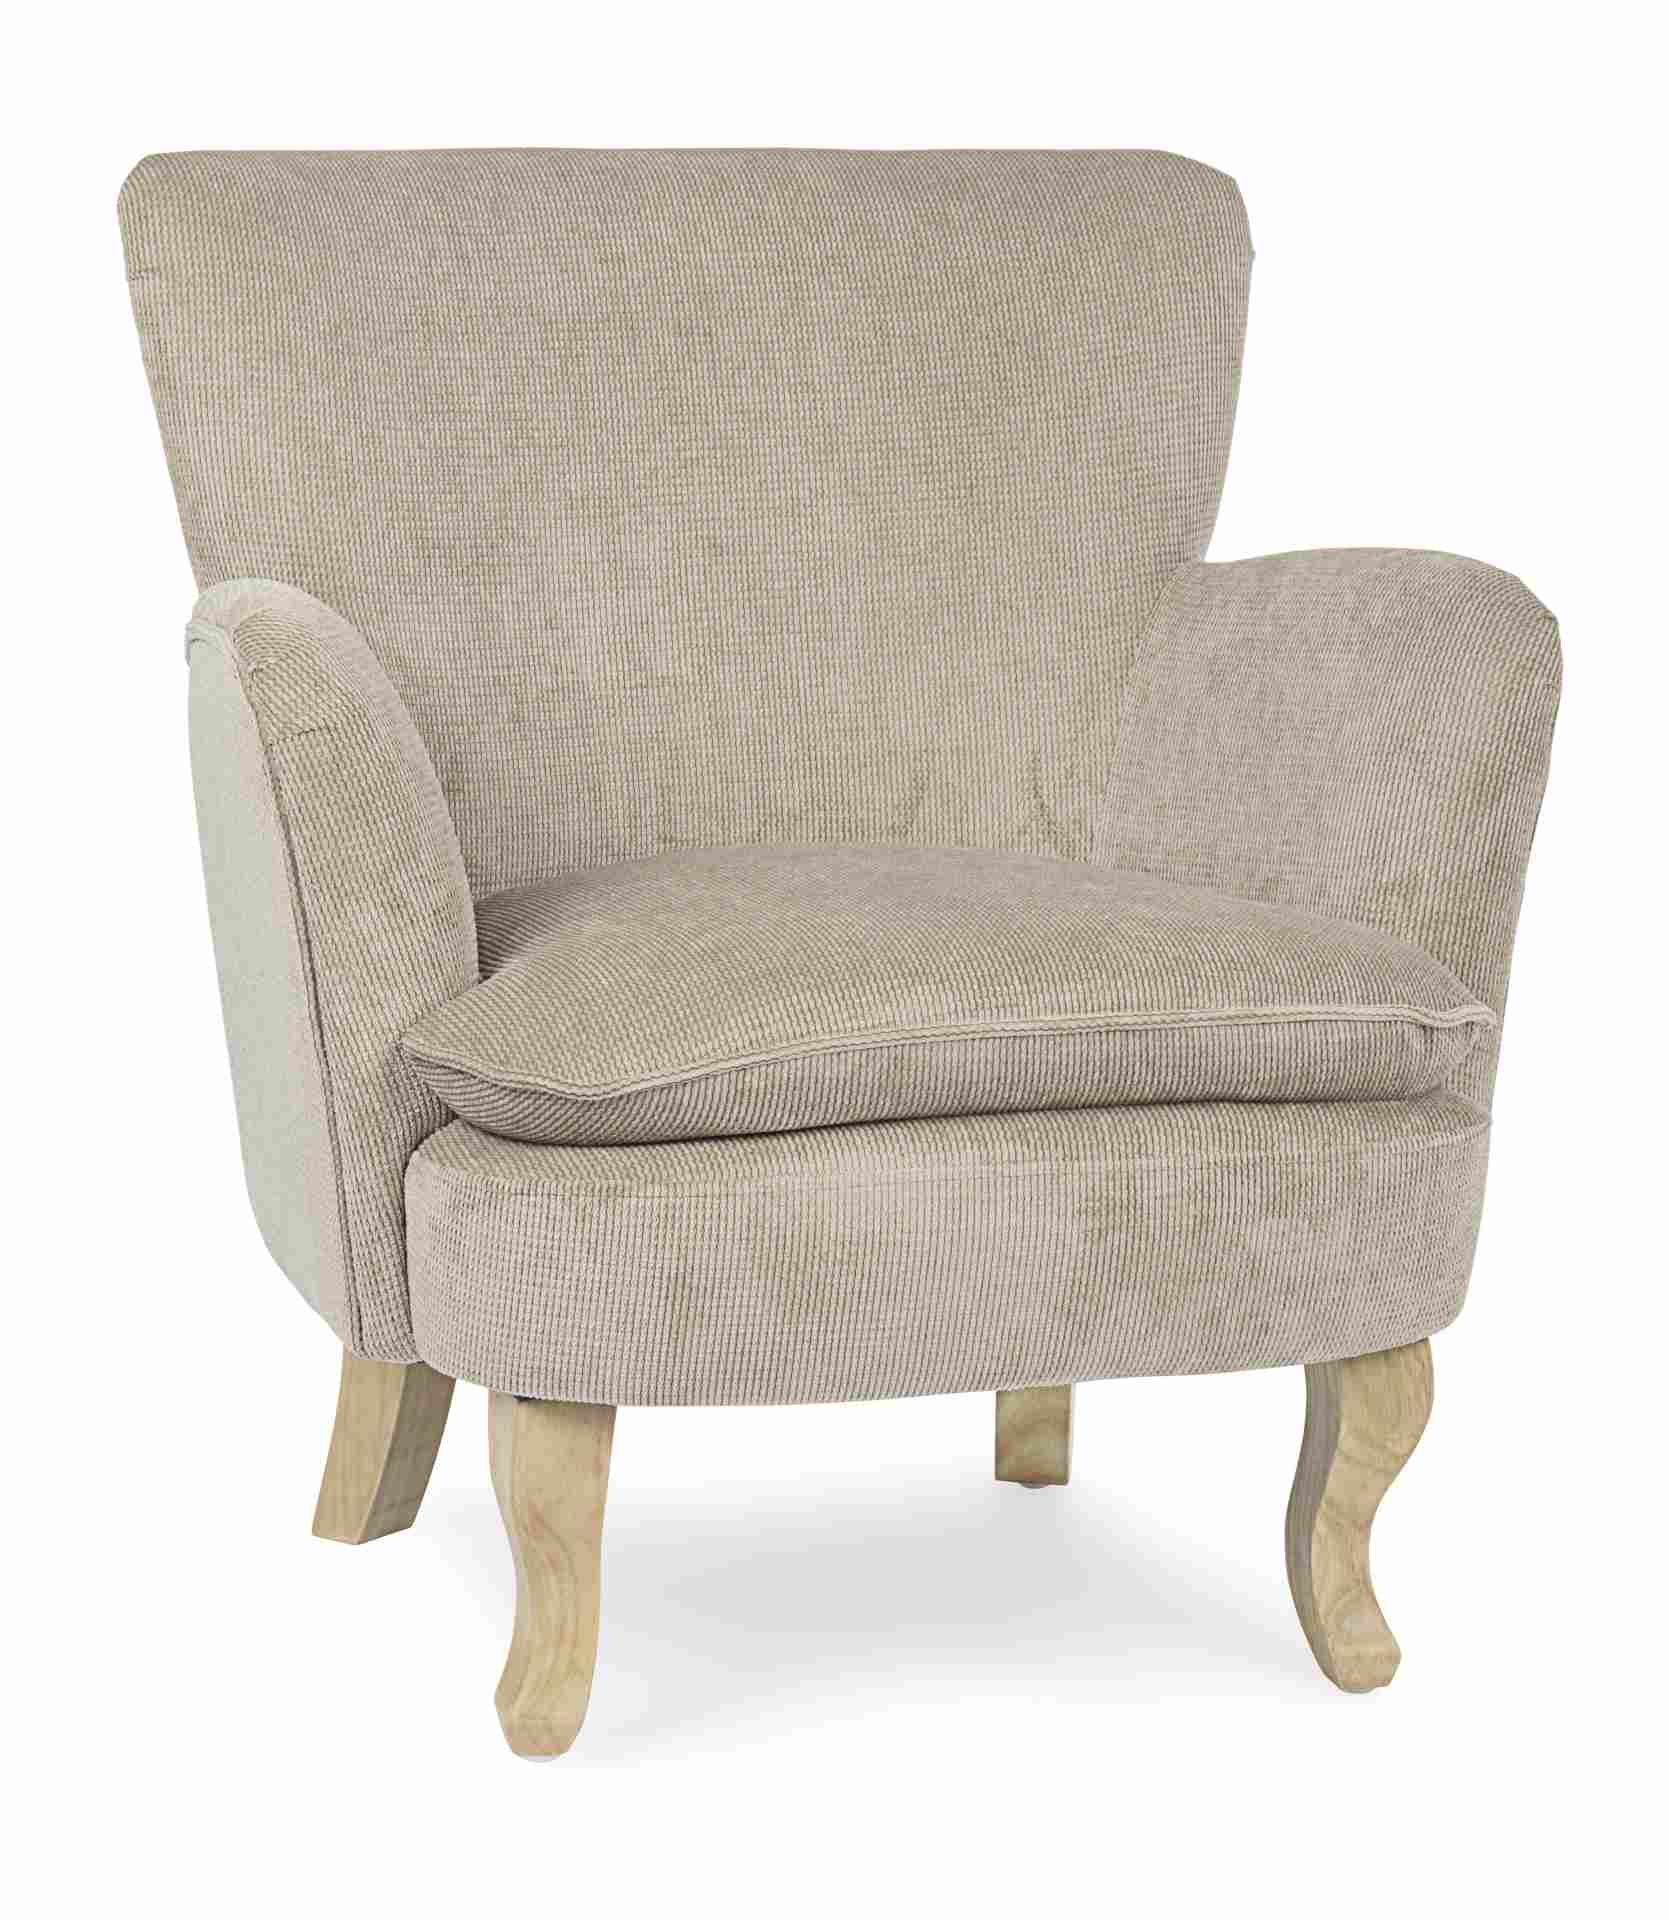 Der Sessel Chenille überzeugt mit seinem klassischen Design. Gefertigt wurde er aus Stoff in Cord-Optik, welcher einen Taupe Farbton besitzt. Das Gestell ist aus Kautschukholz und hat eine natürliche Farbe. Der Sessel besitzt eine Sitzhöhe von 45 cm. Die 